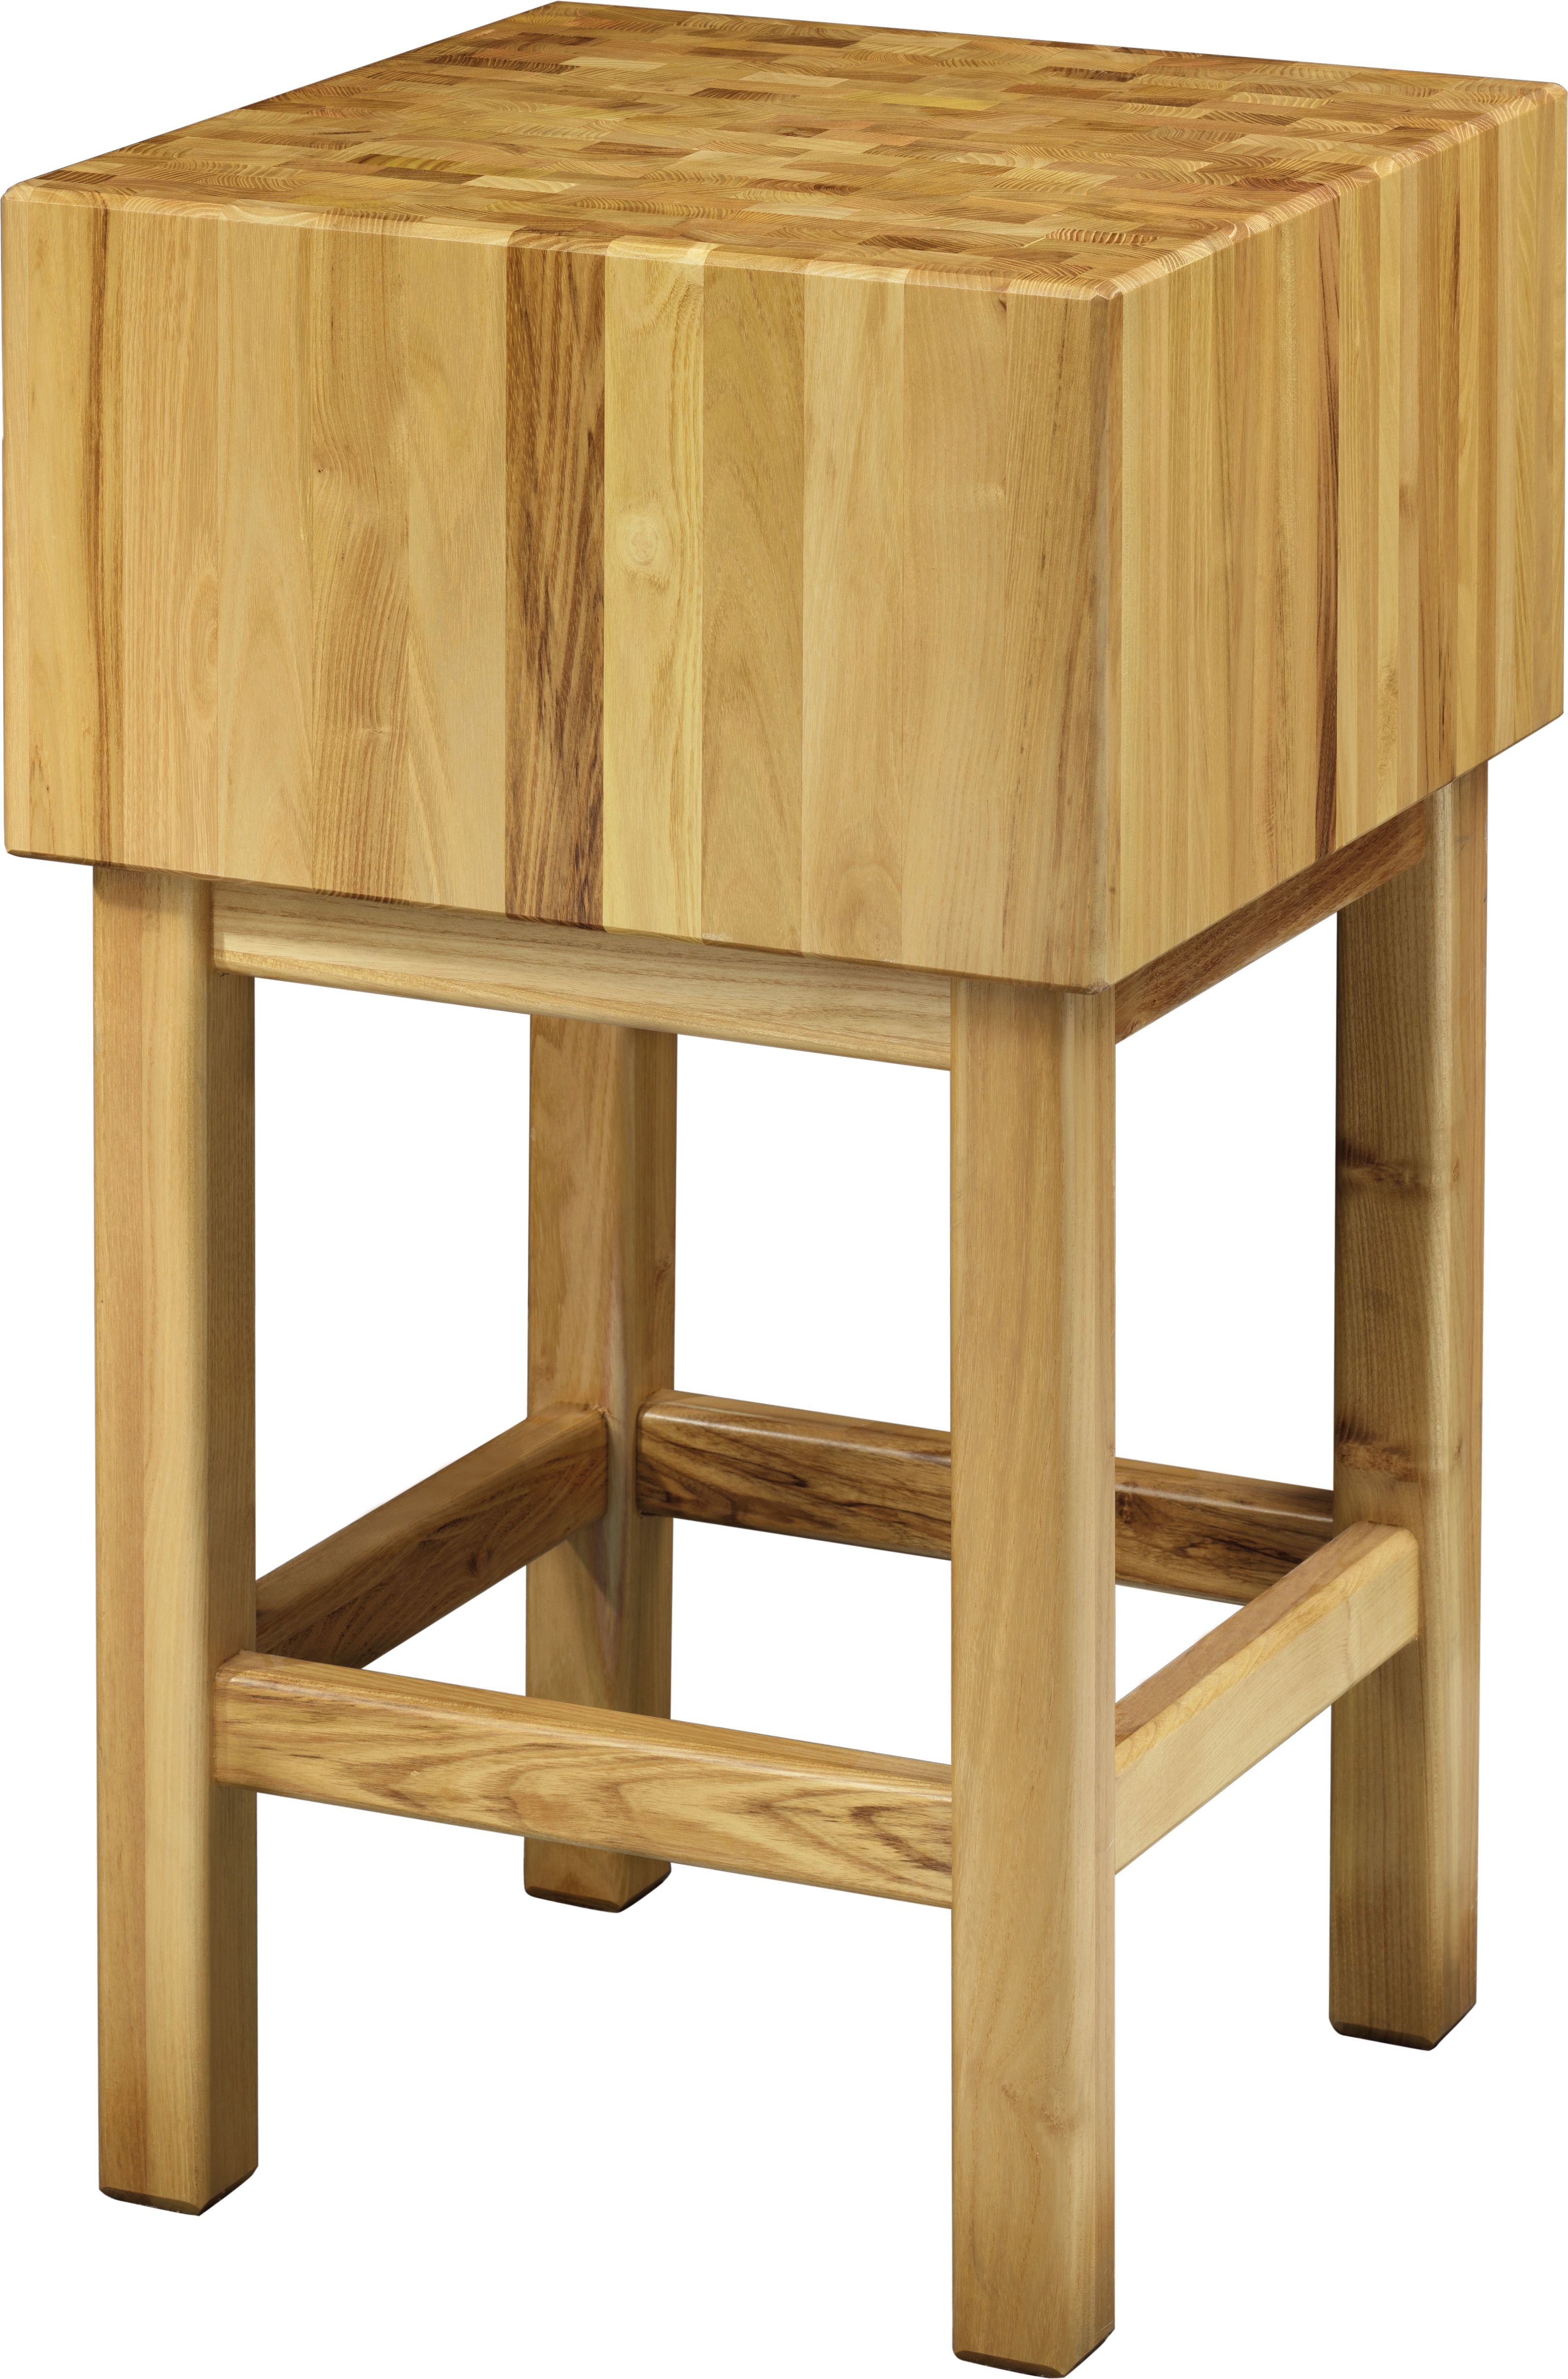 Hackblock – Holz – Stärke 25 cm – Untergestell Masse 70 x 60 x 90 cm